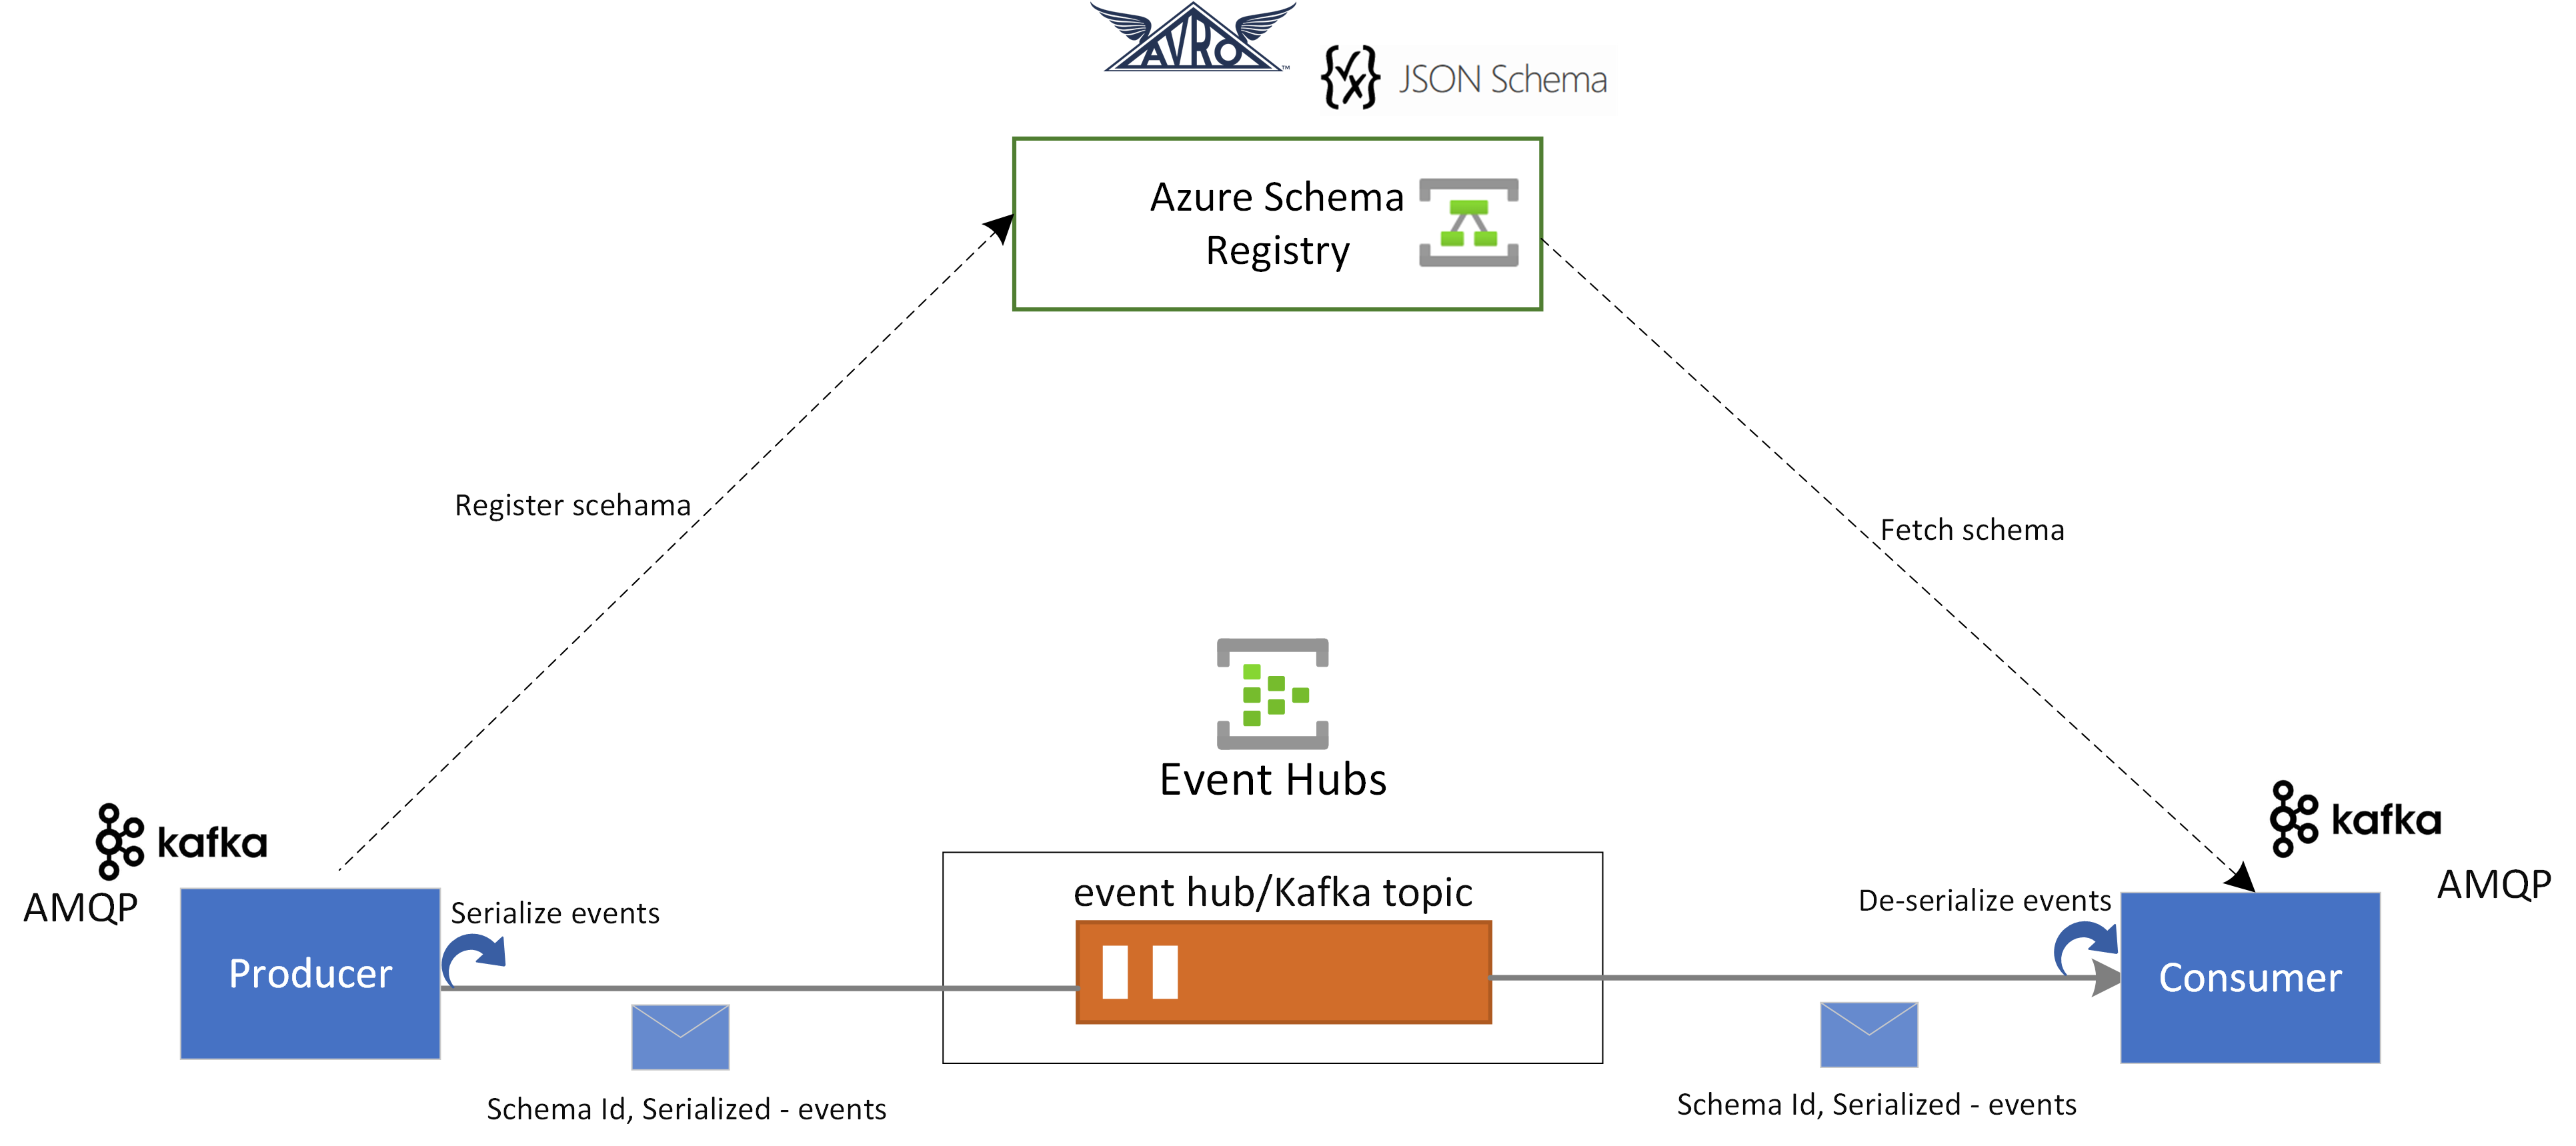 Schema Registry ve Event Hubs tümleştirmesi gösteren diyagram.